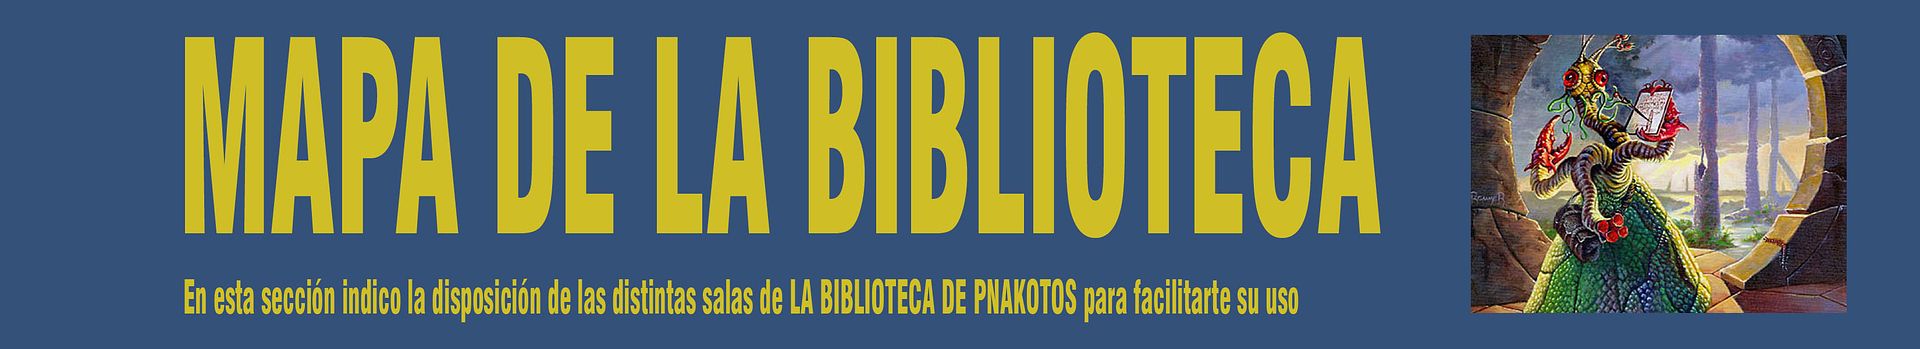 MAPA DE LA BIBLIOTECA. En esta sección indico la disposición de las distintas salas de La Biblioteca de Pnakotos, para facilitarte su uso.